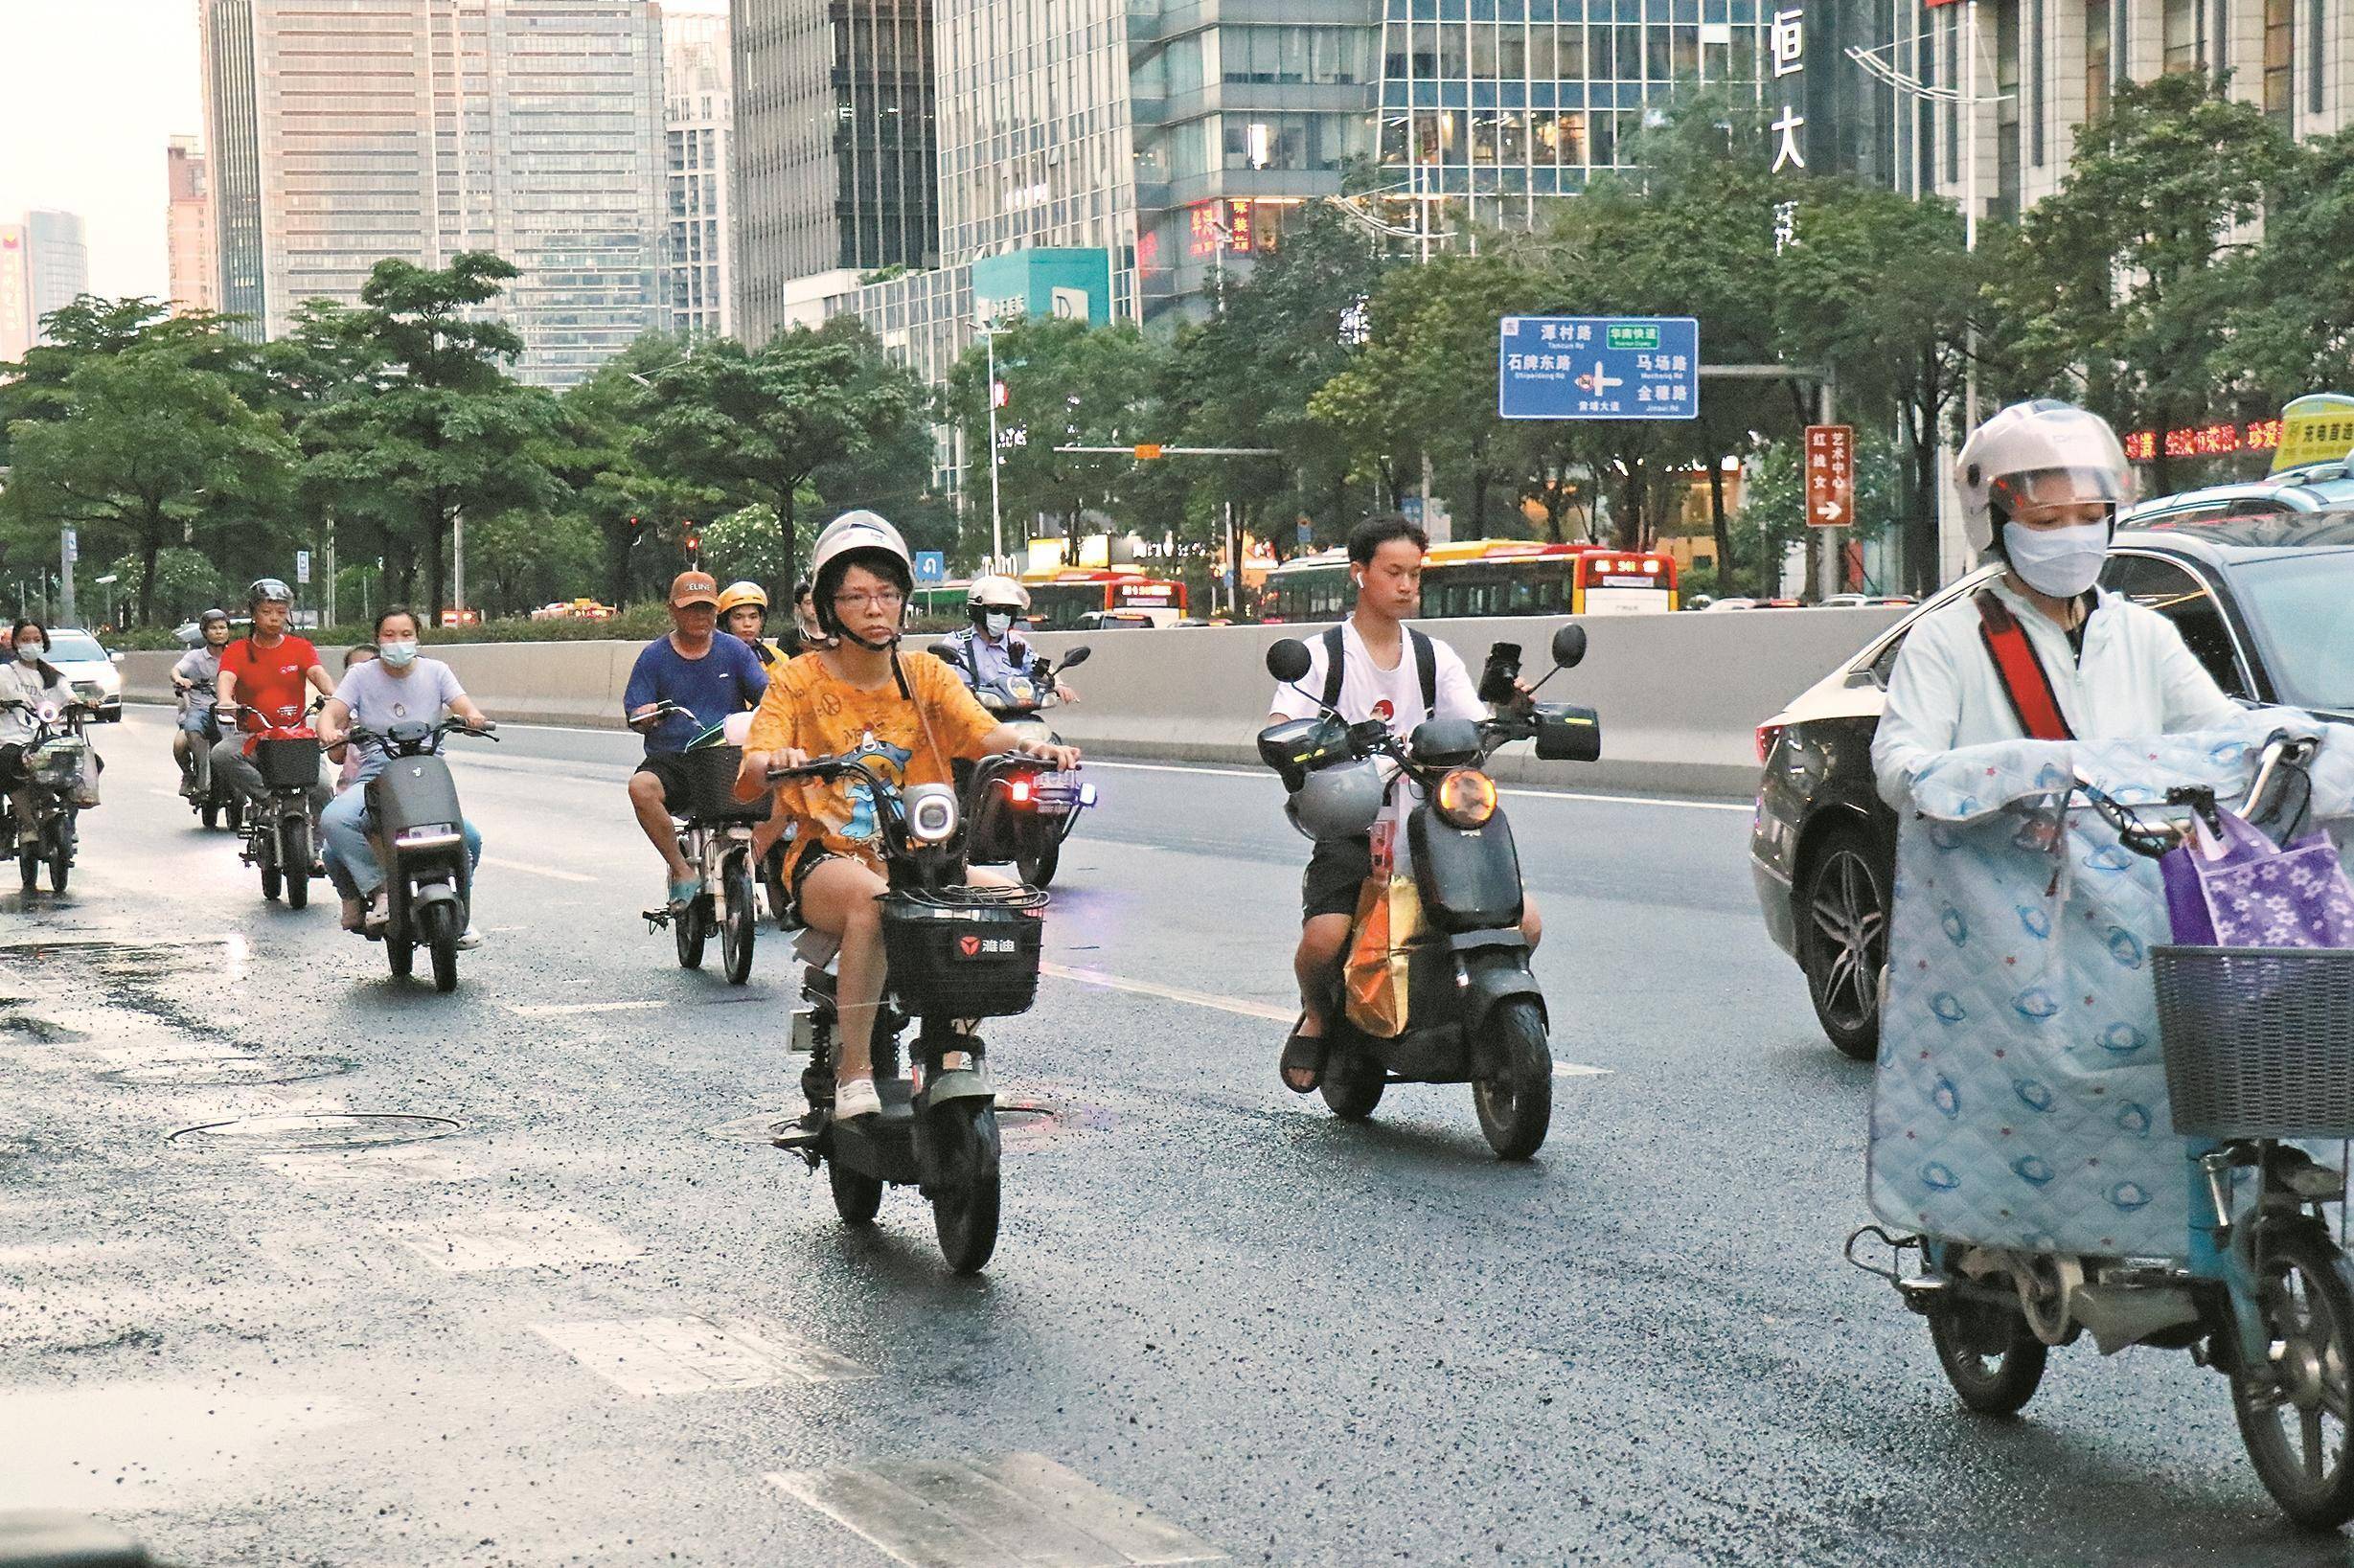 广州拟分路段分时段限行电动自行车 各方交通参与者有赞有弹